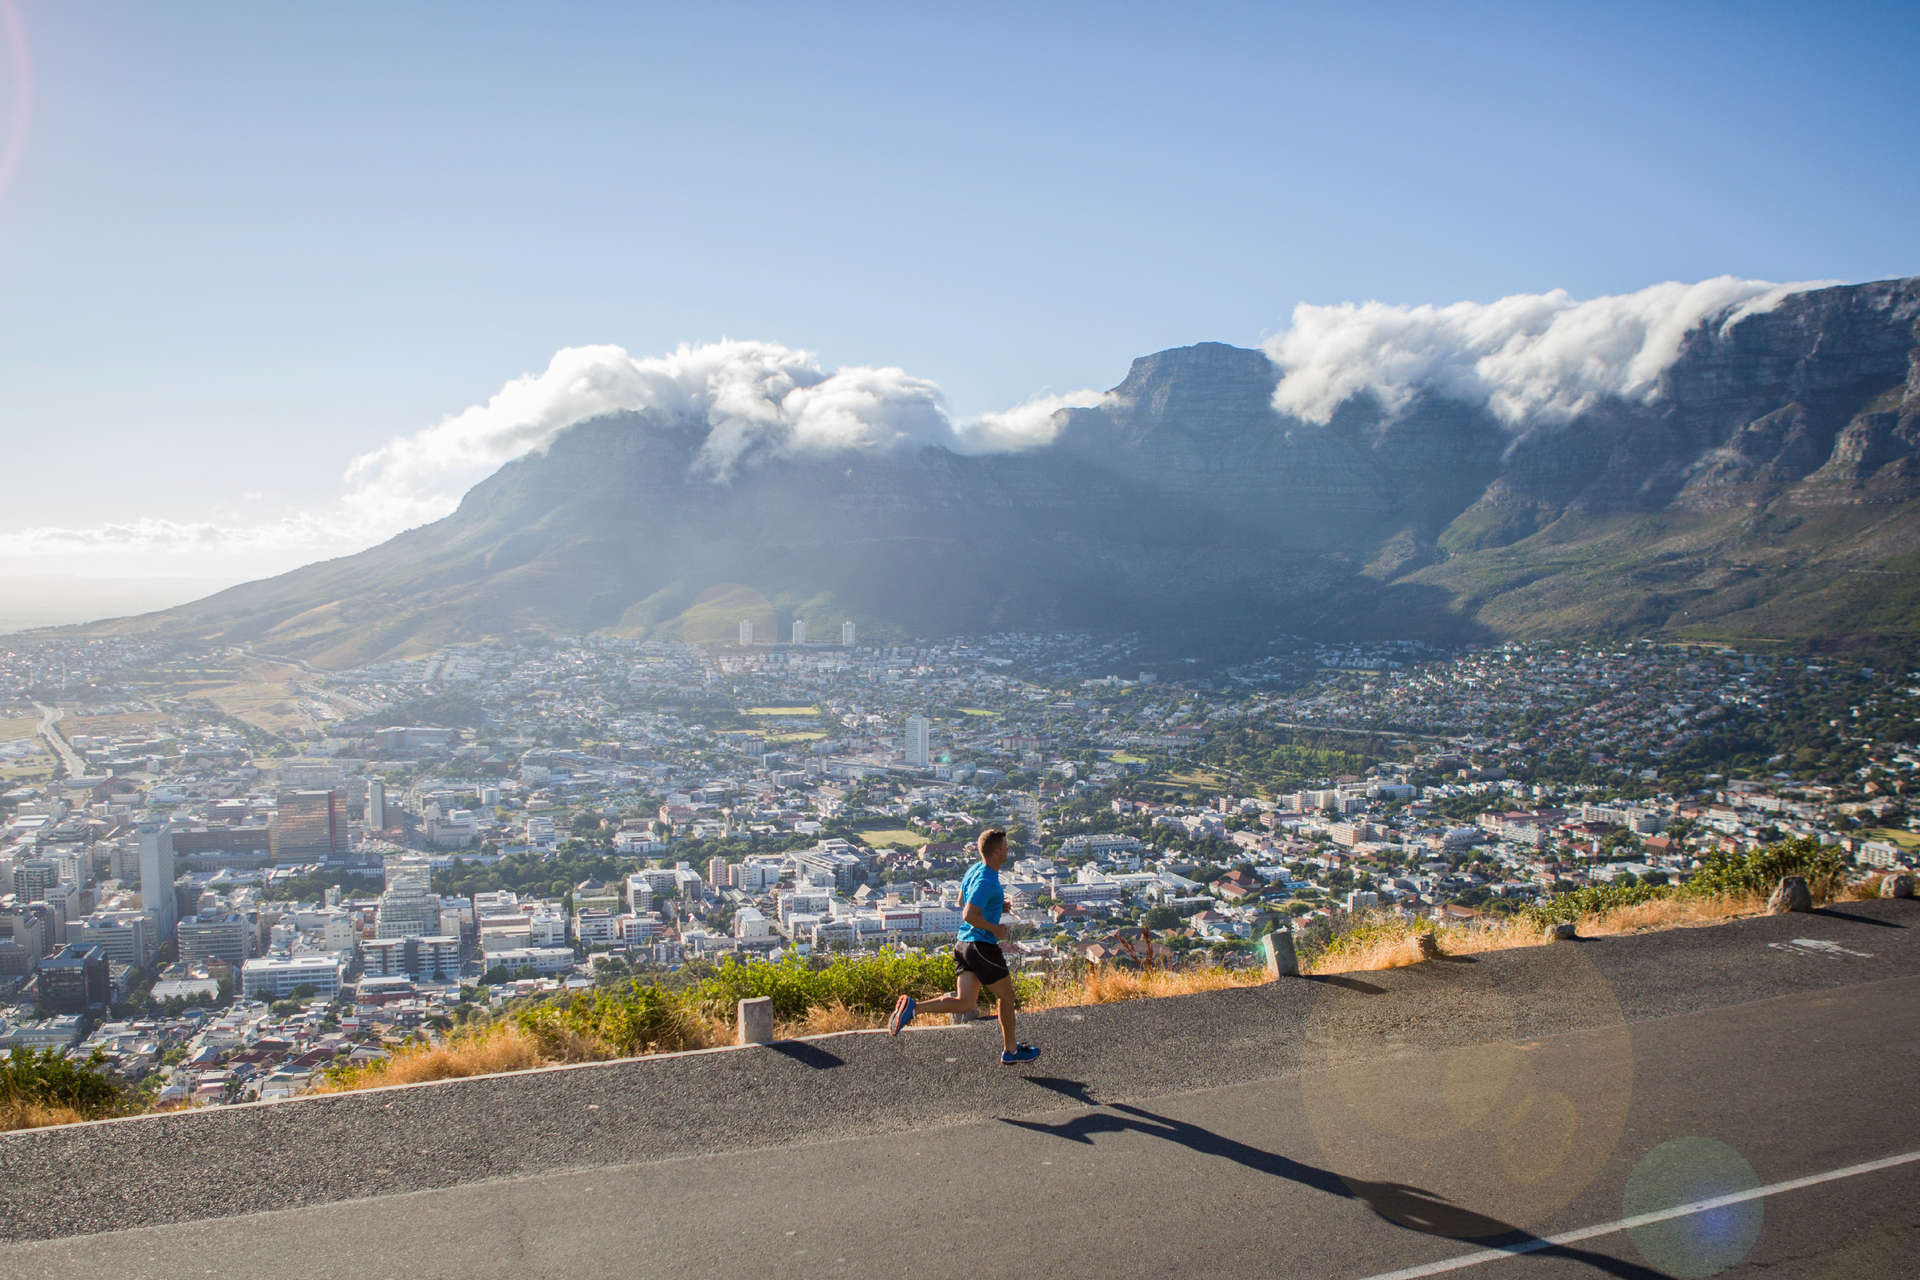 Les magnifiques vues ne vous accompagneront pas tout au long des 42 kilomètres (26,2 miles) du marathon du Cap.